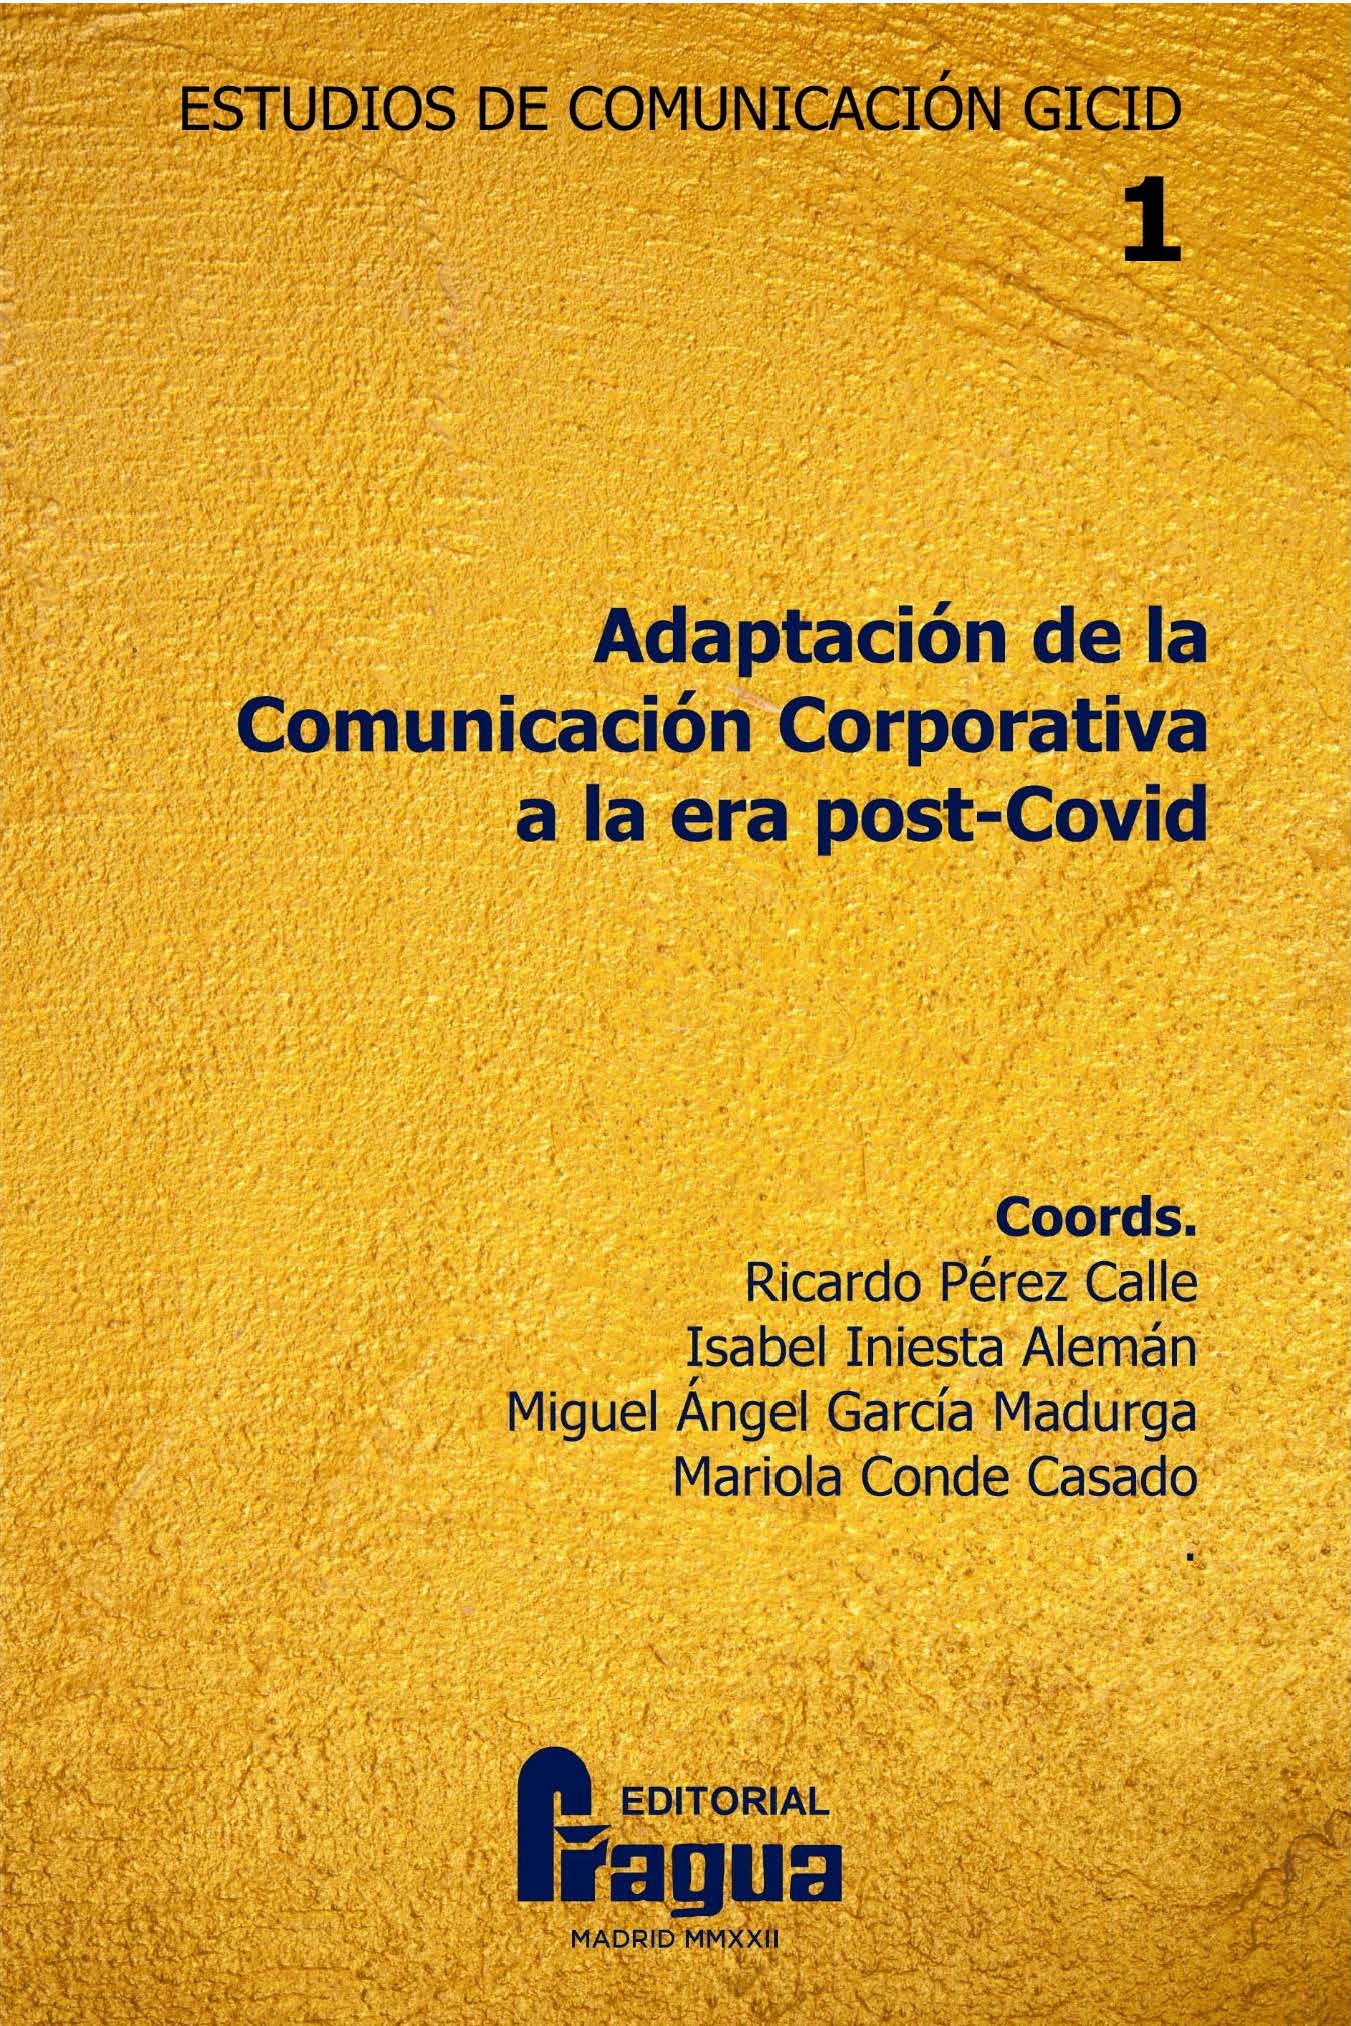 Imagen de portada del libro Adaptación de la comunicación corporativa a la era post-Covid